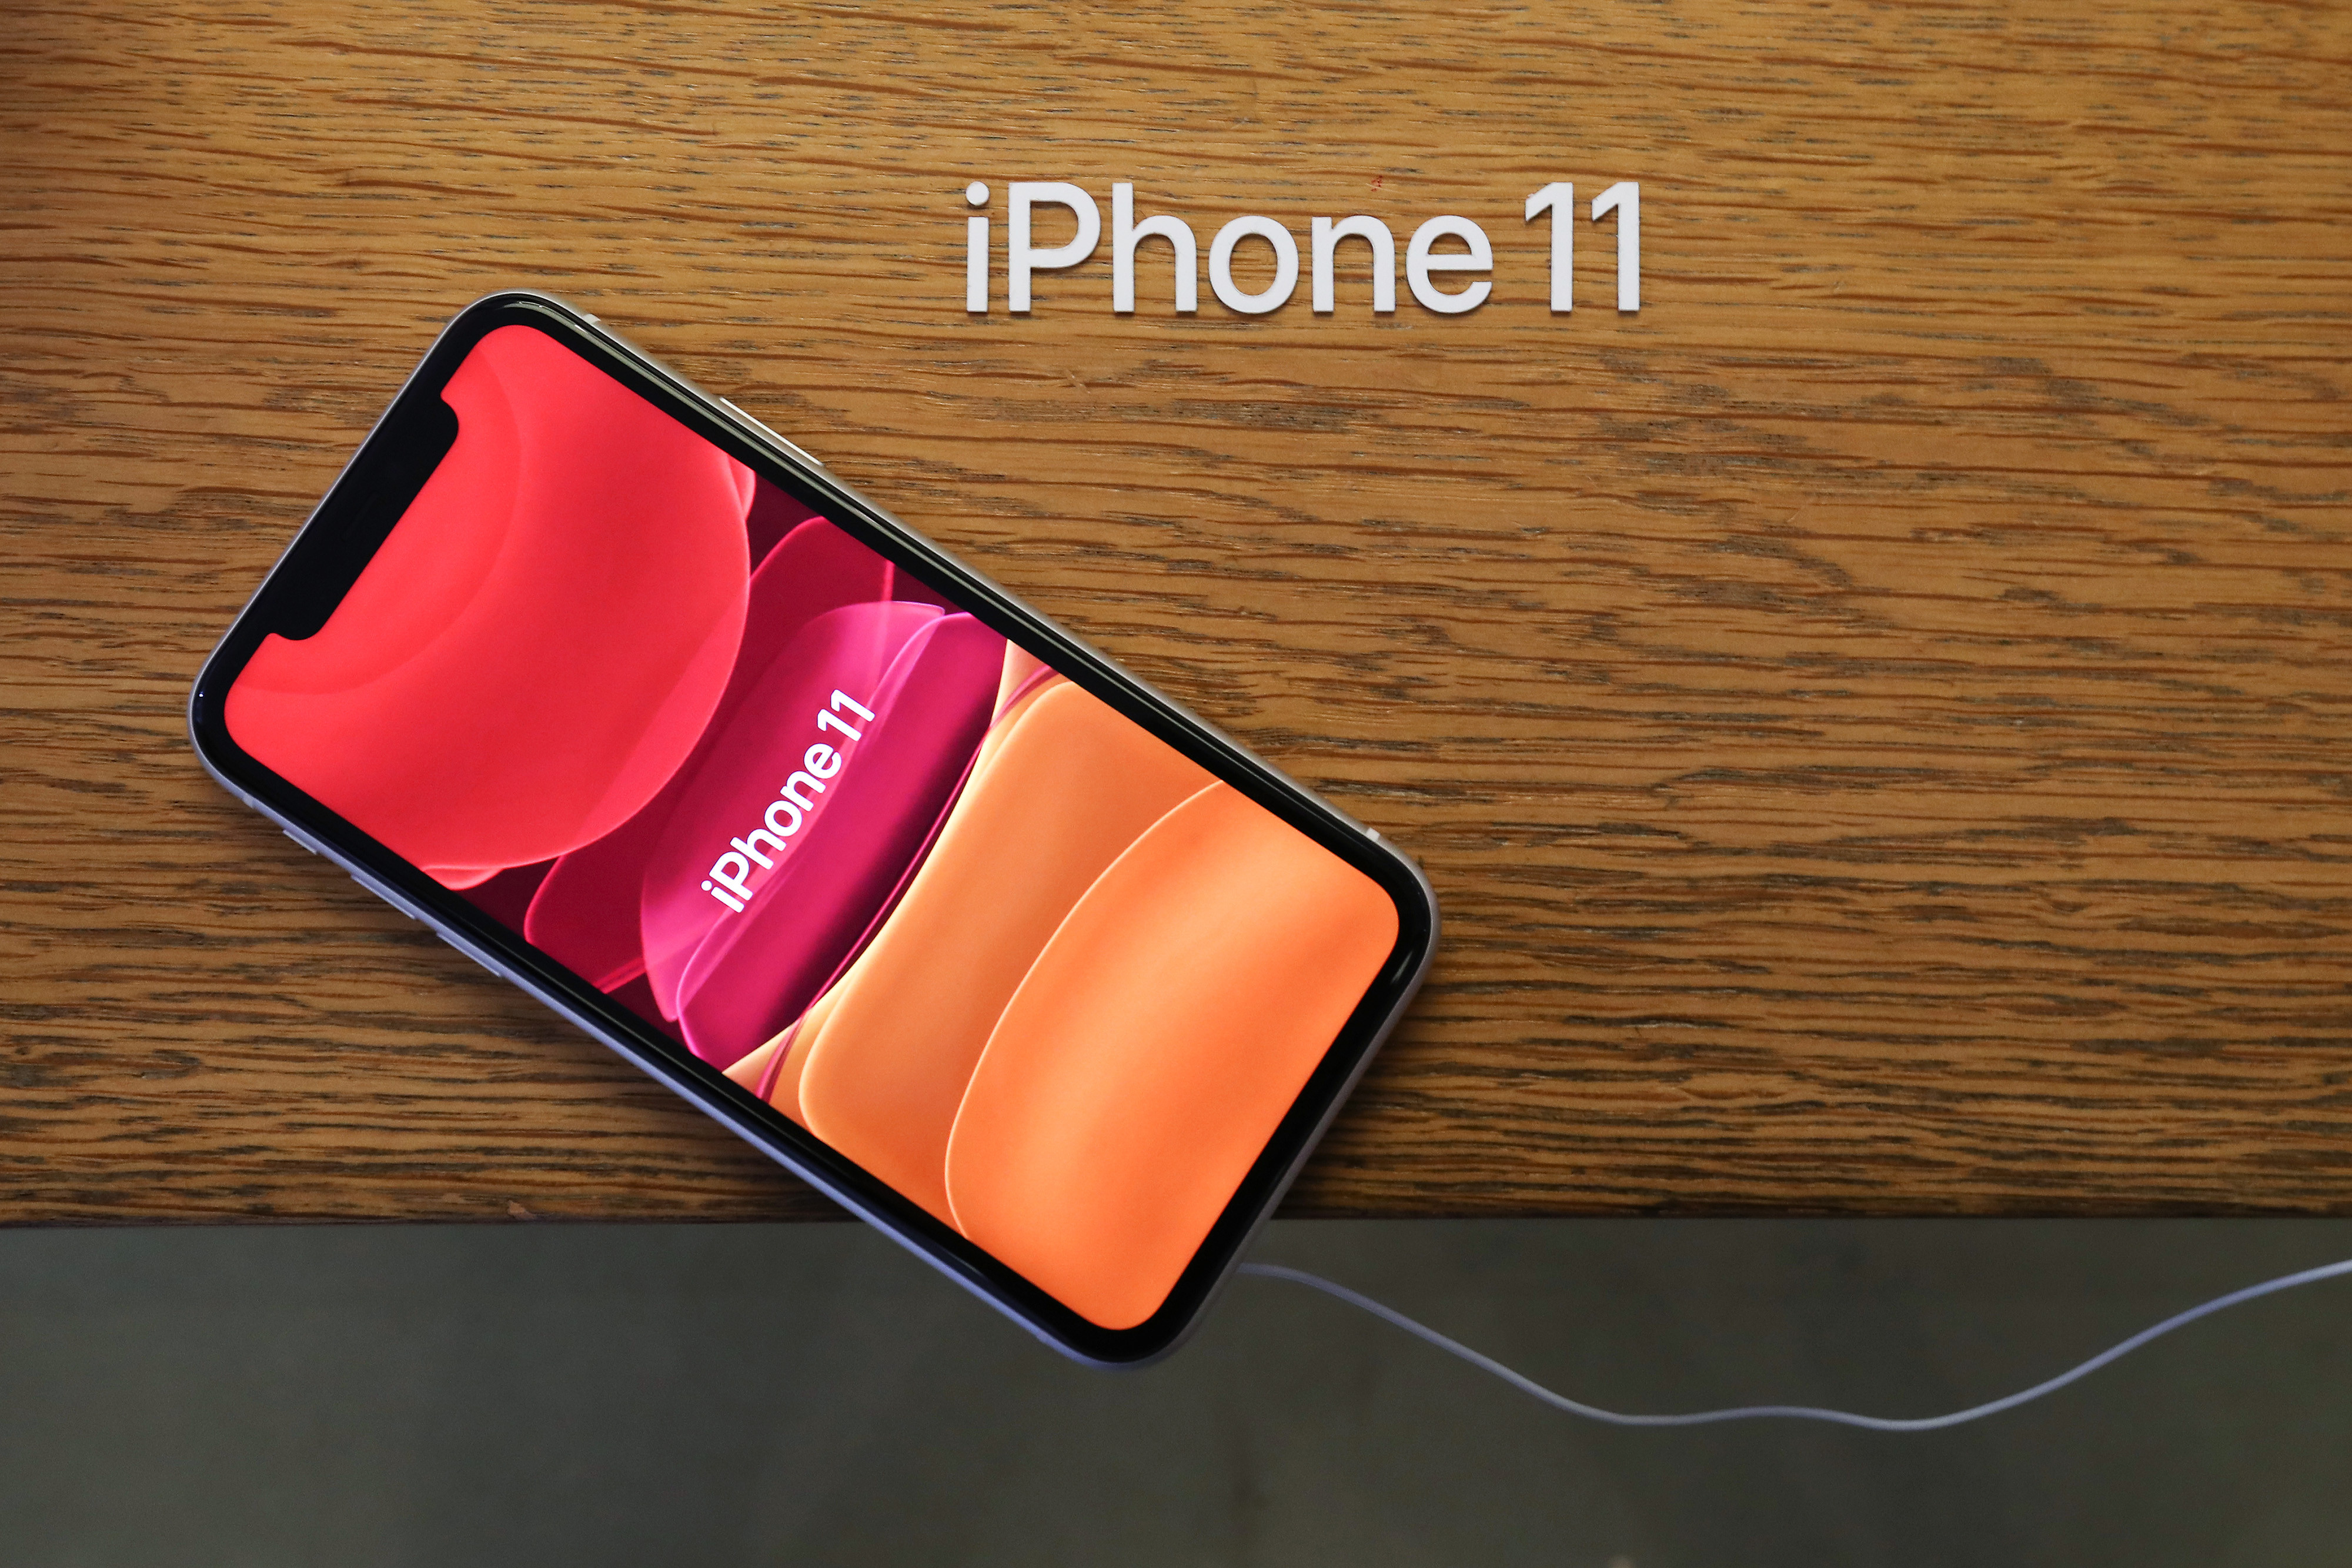  IPhone 11 ra mắt vào tháng 9